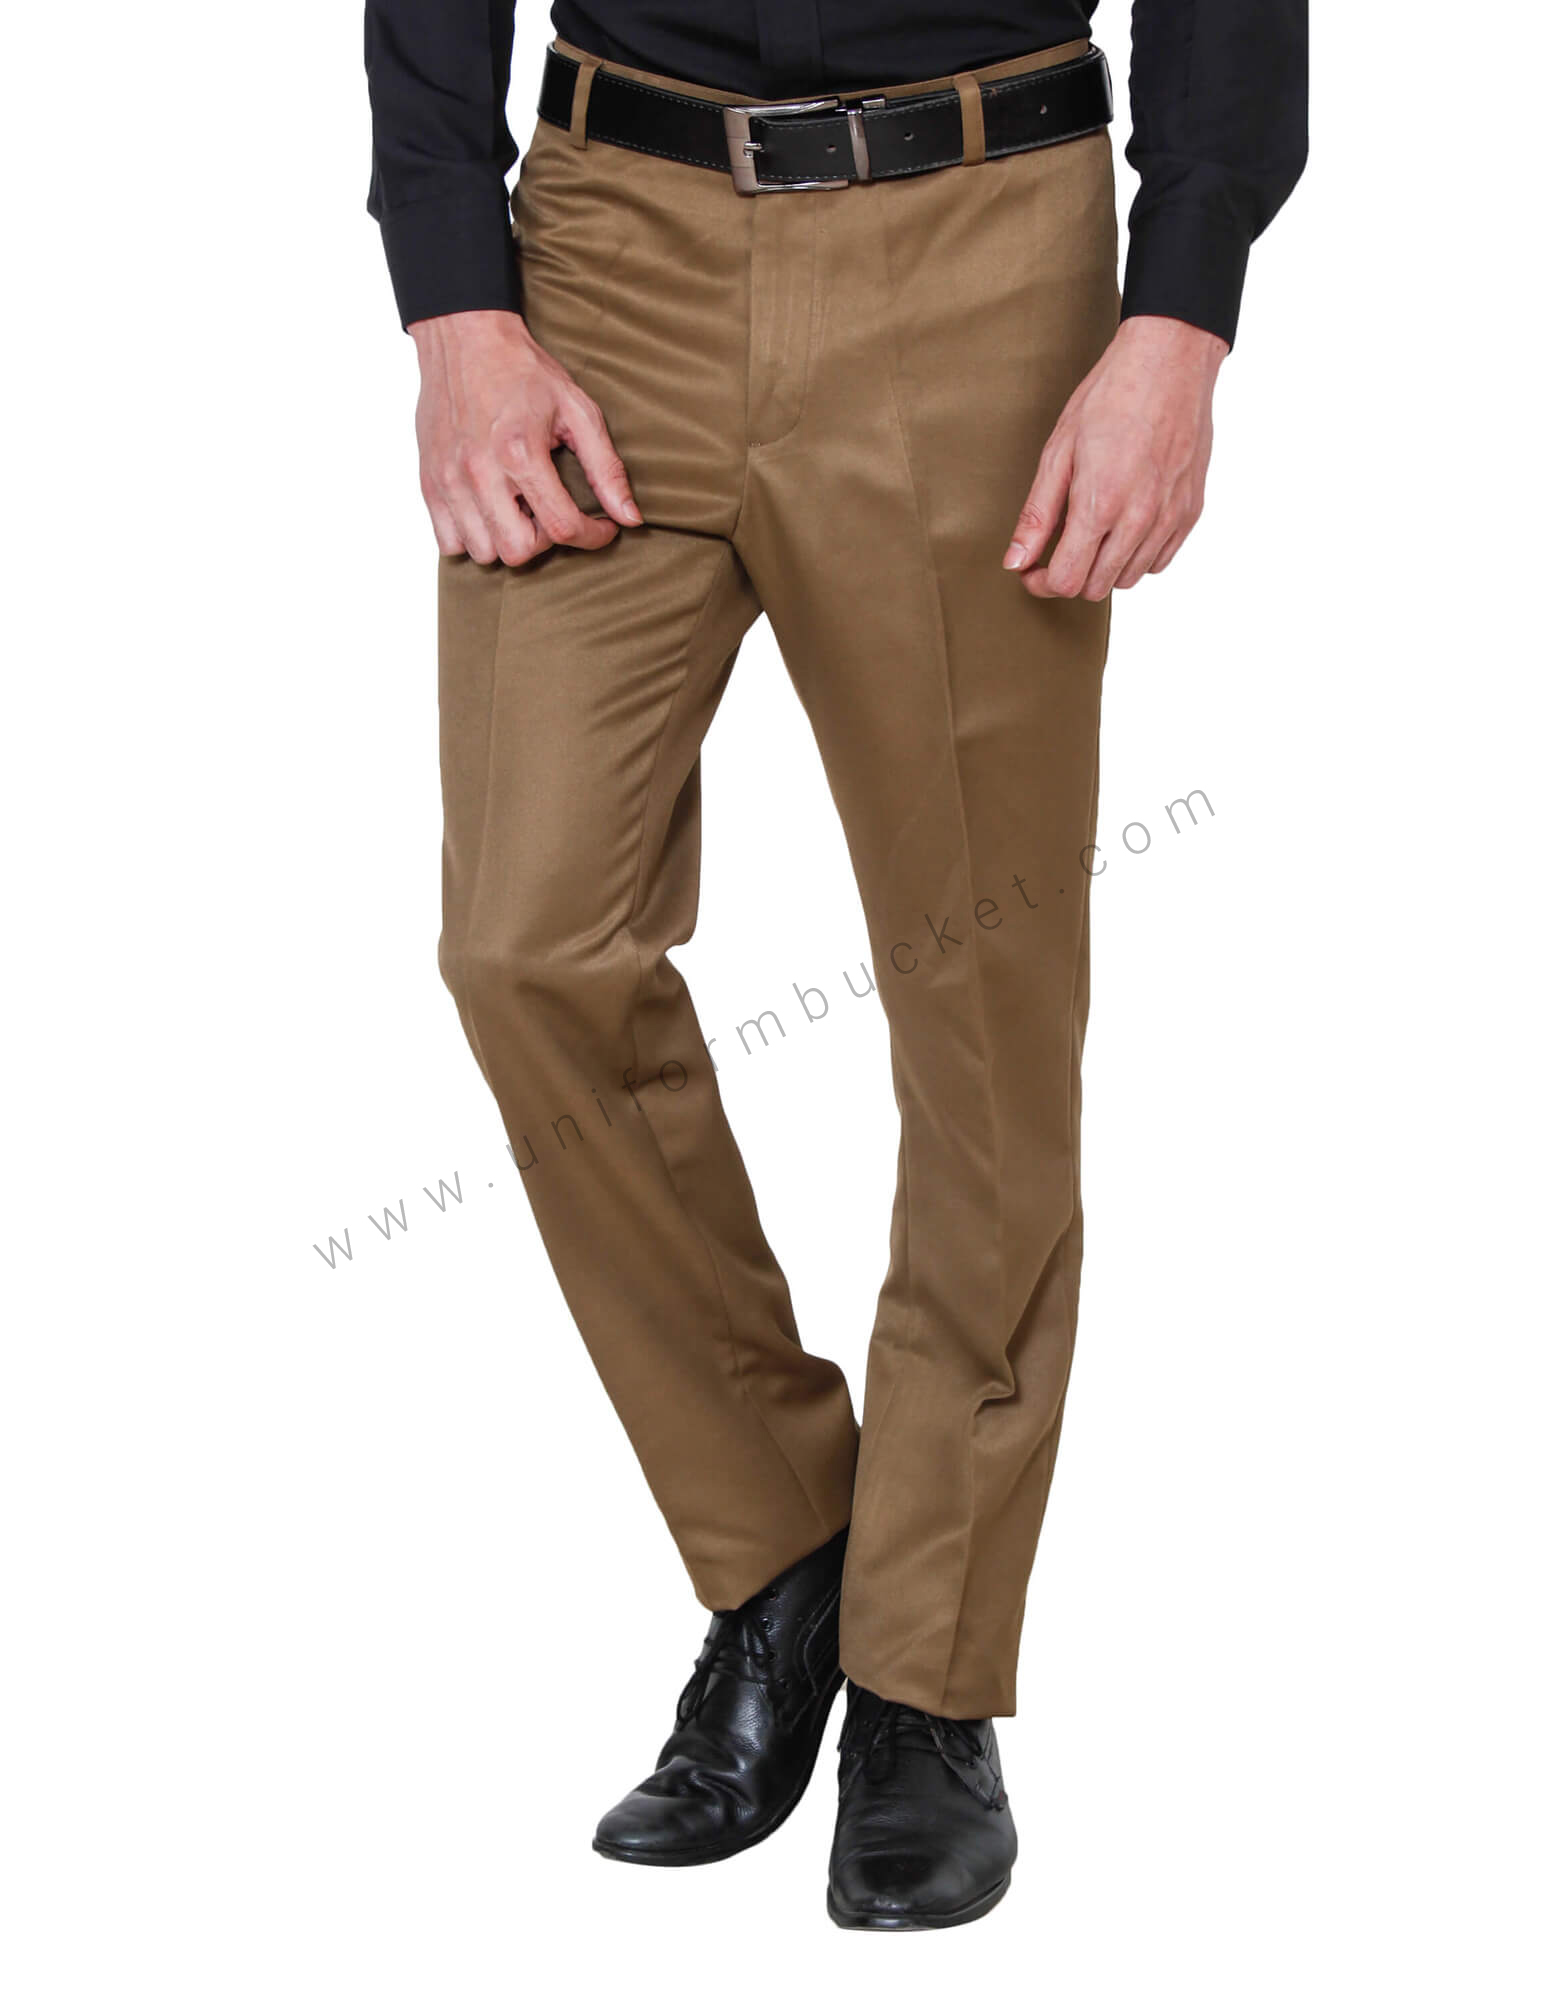 Mountain Khakis | Premium Outdoor Clothing for Men & Women